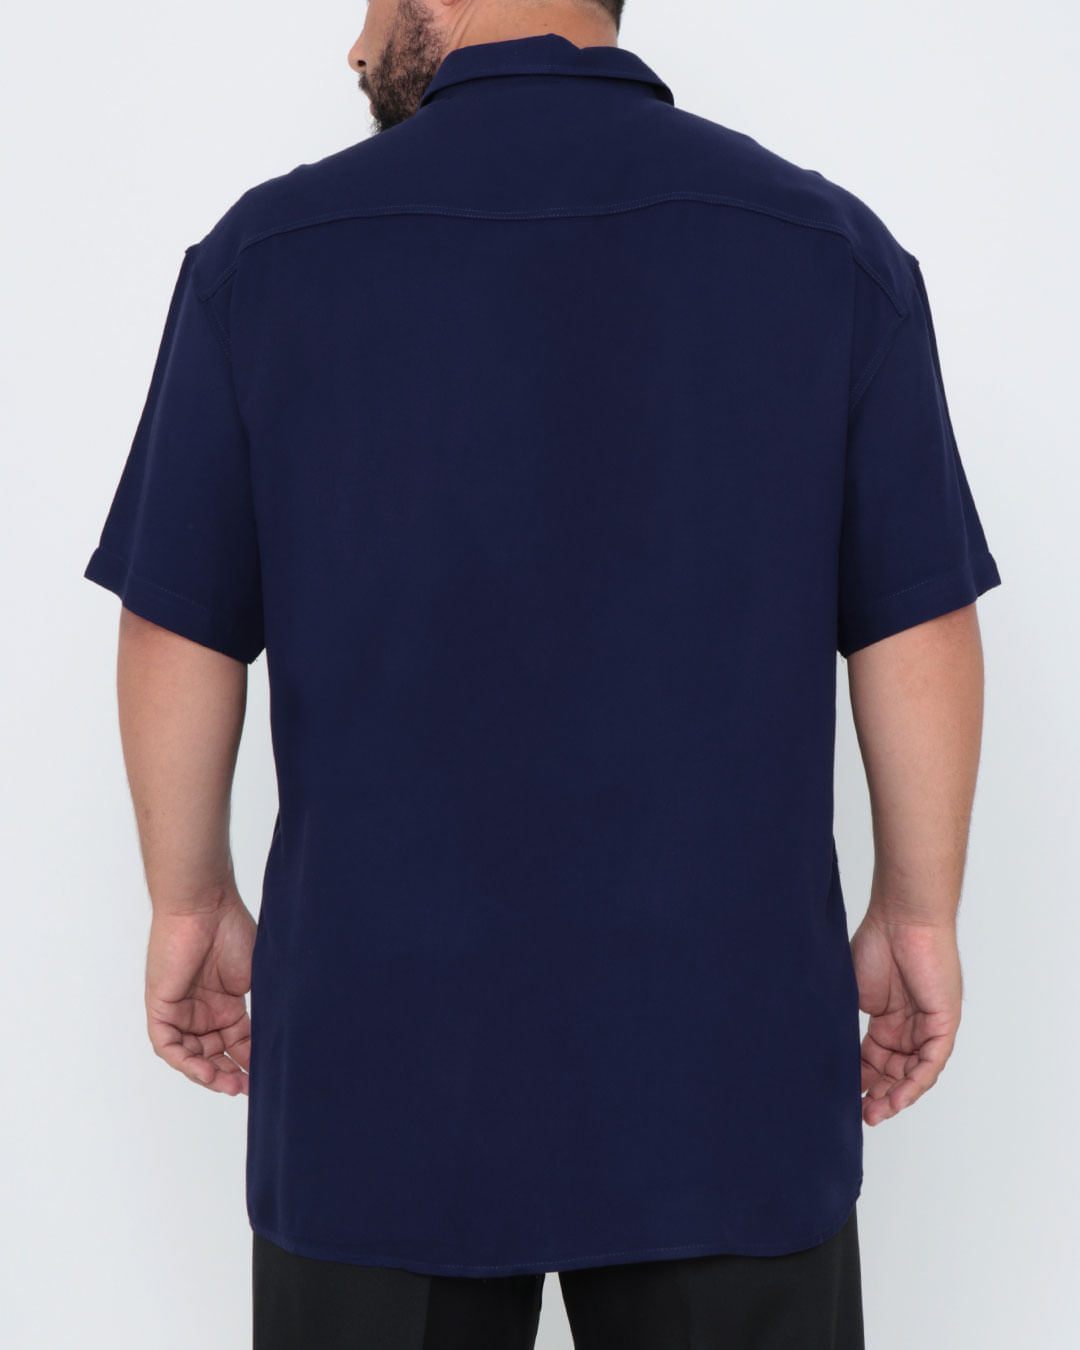 Camisa-Masculina-Plus-Size-Manga-Curta-Azul-Marinho